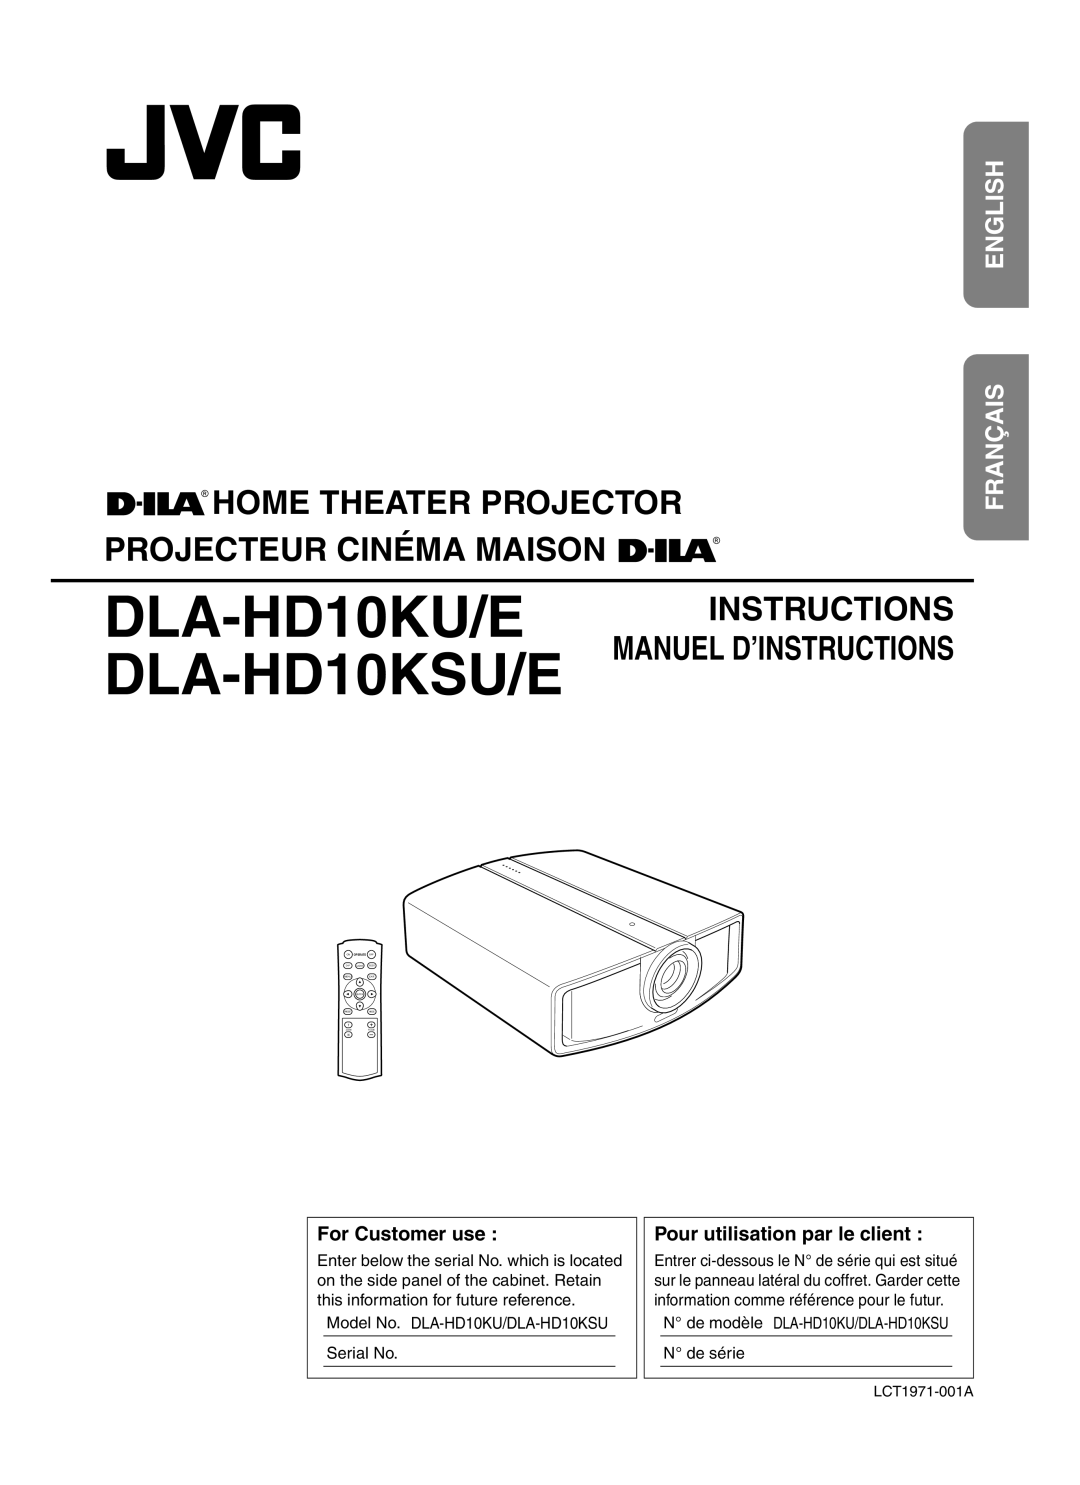 JVC manual DLA-HD10KSU/E MANUEL D’INSTRUCTIONS, English Français, For Customer use, Pour utilisation par le client 